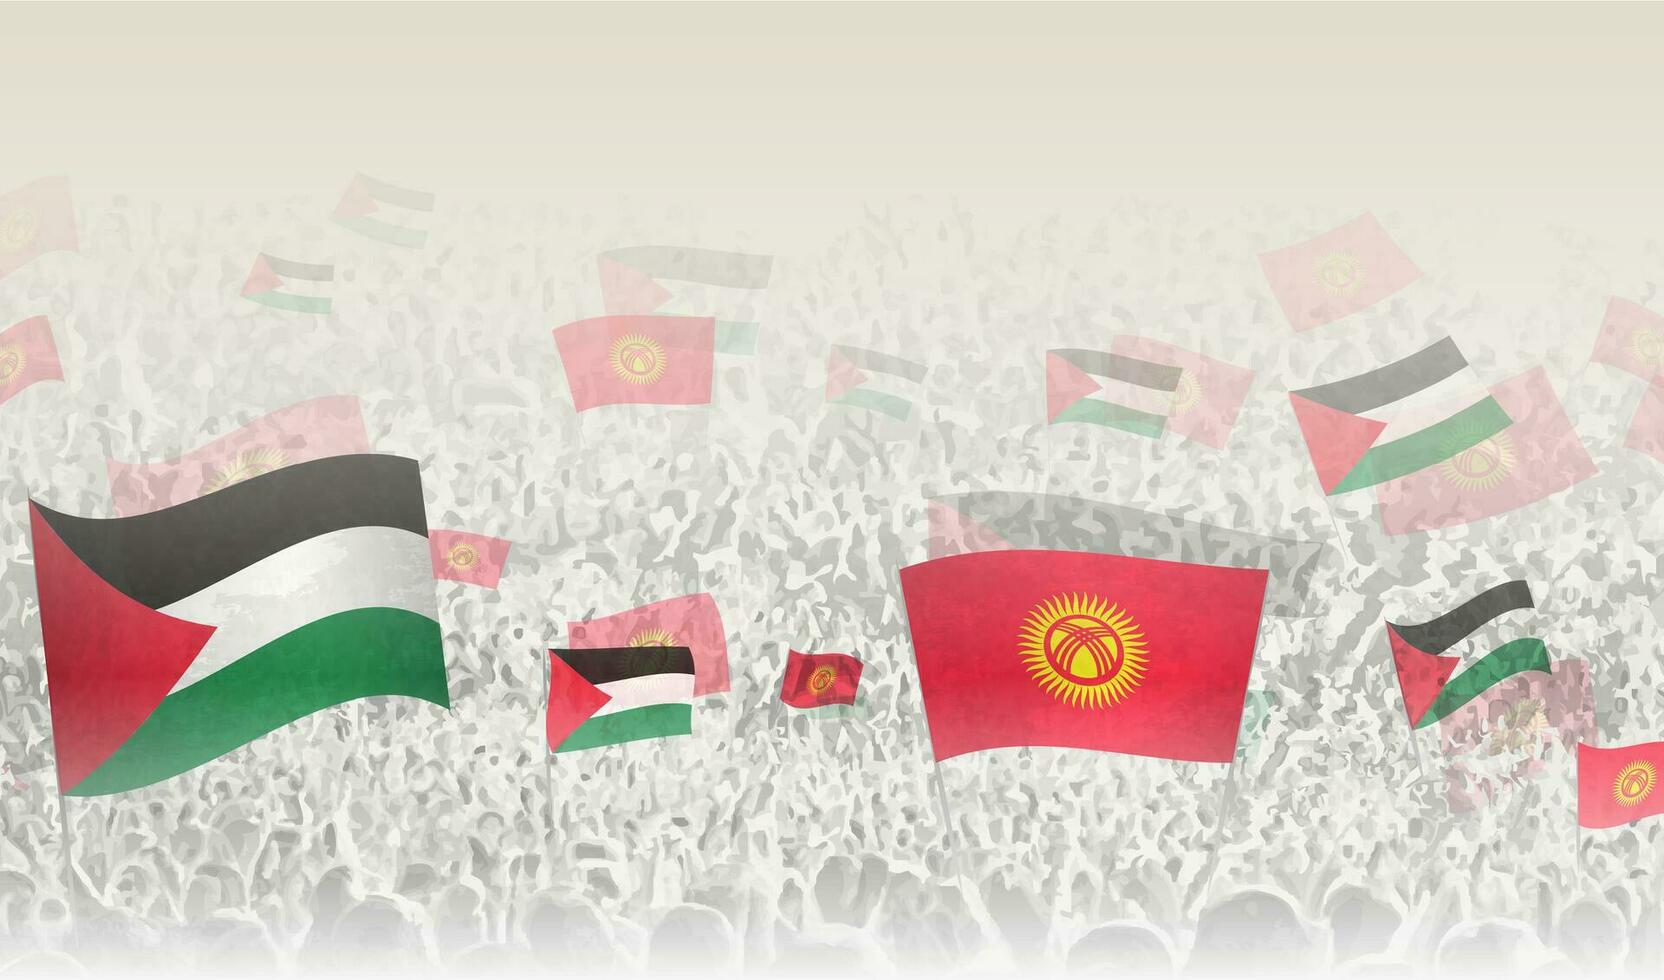 palestina och kyrgyzstan flaggor i en folkmassan av glädjande människor. vektor